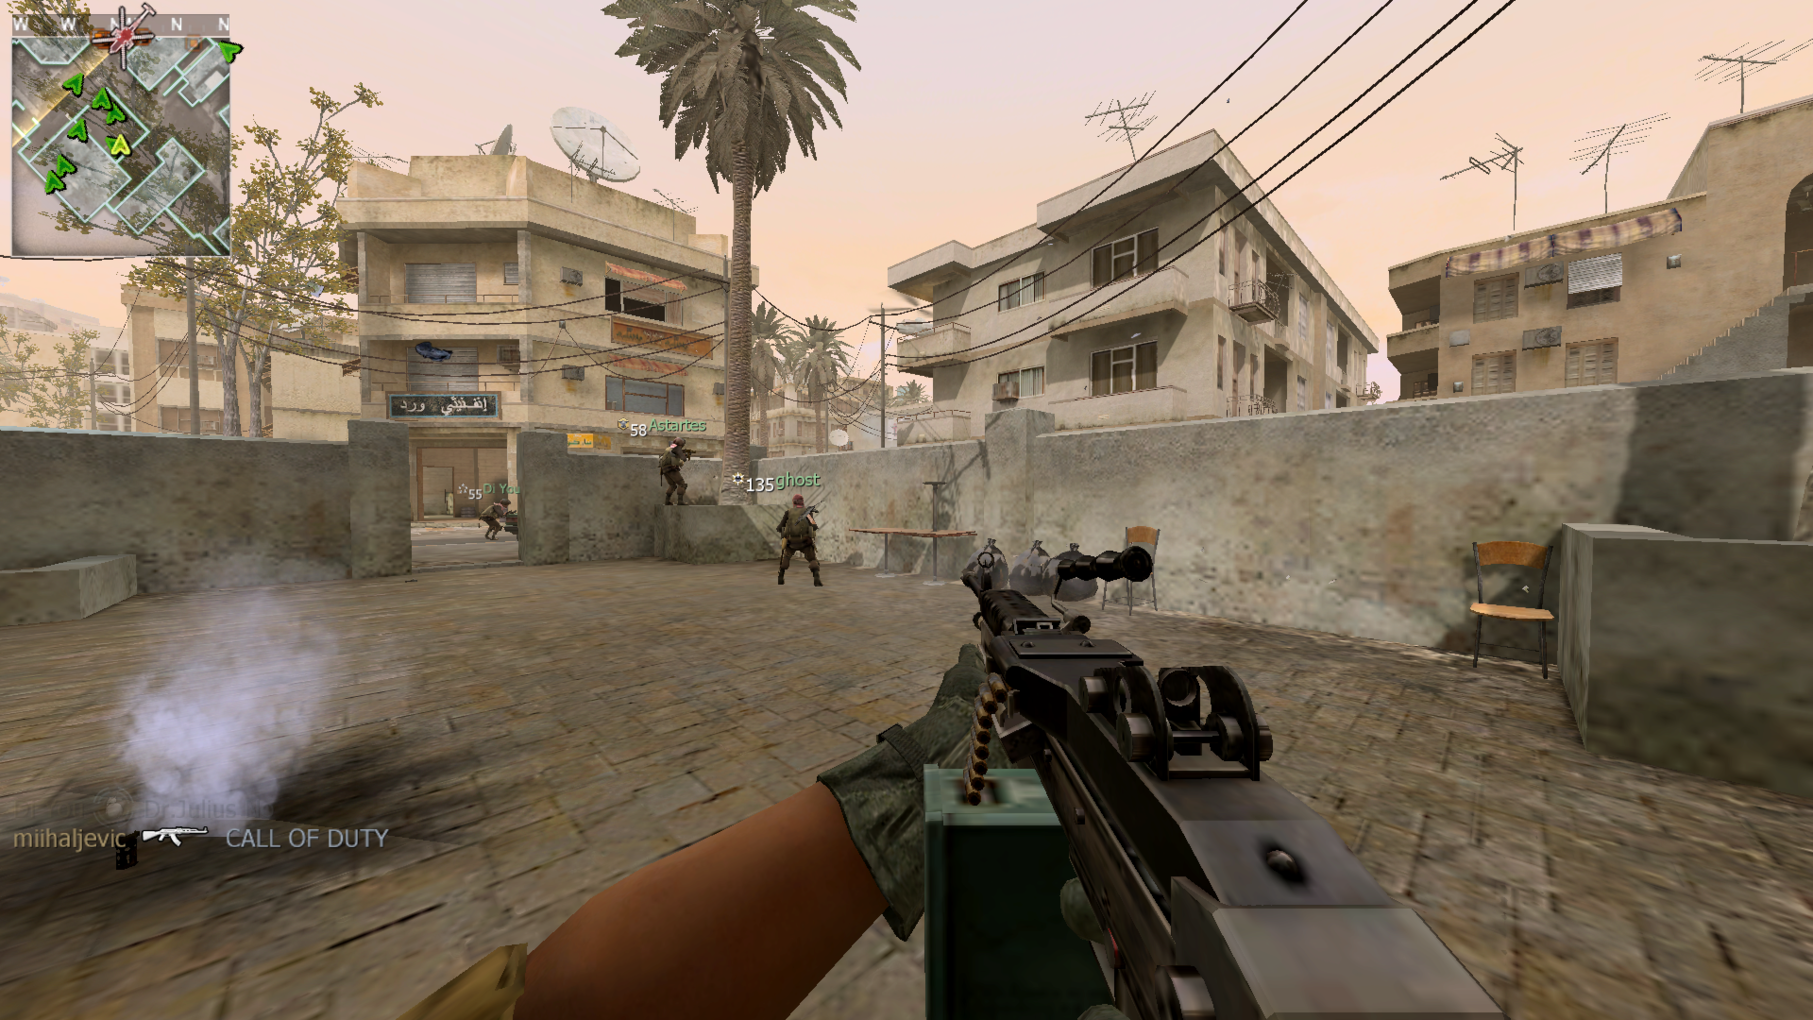 Repack by canek77. Modern Warfare 2 [iw4x] REPACK от canek77. Modern Warfare 2 (2009) REPACK by canek77. Canek77 репаки.